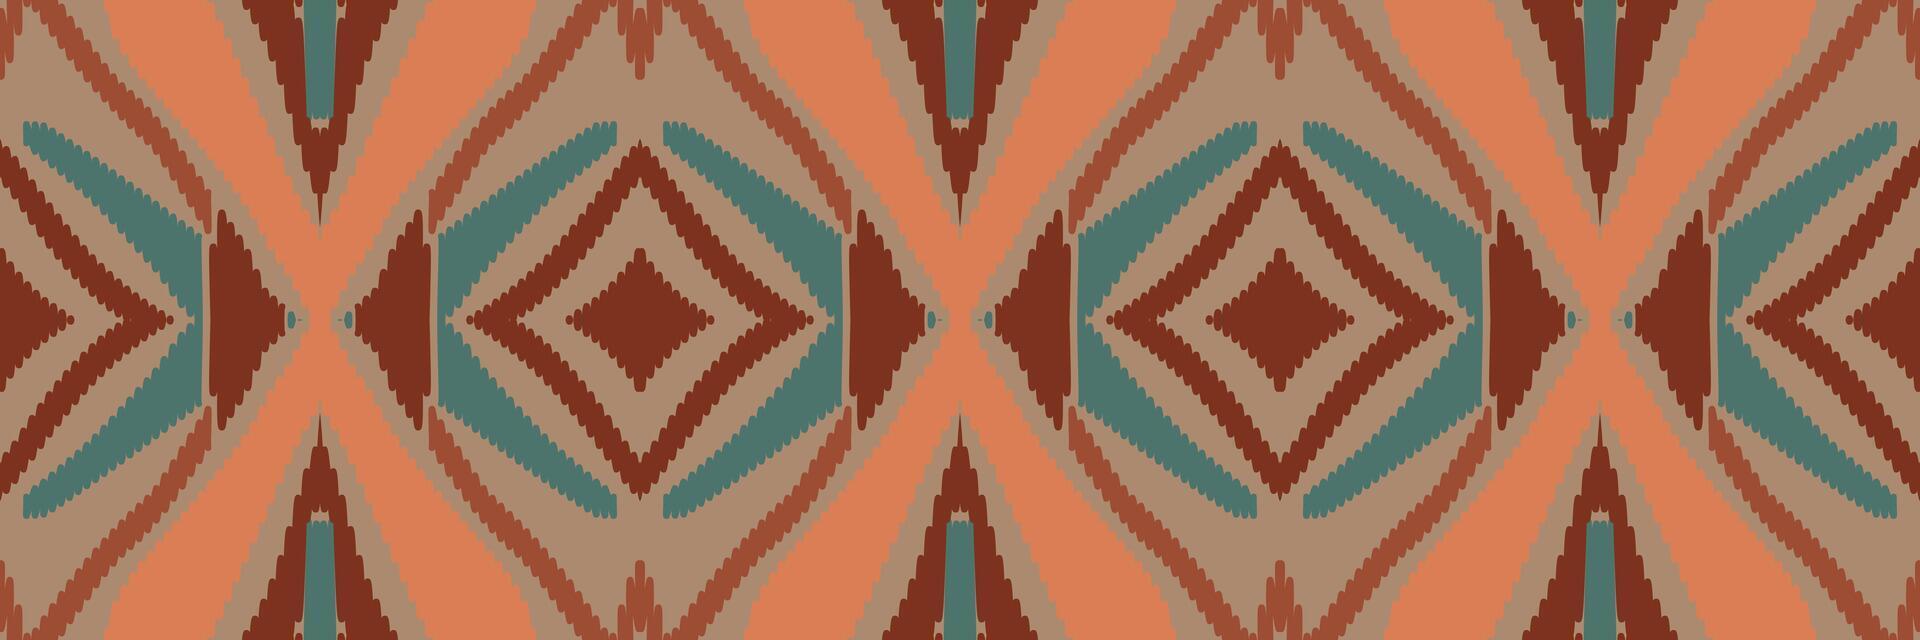 arte abstrata padrão étnico. padrão sem emenda ikat em tribal. design para plano de fundo, papel de parede, ilustração vetorial, tecido, roupas, tapetes, bordados. vetor